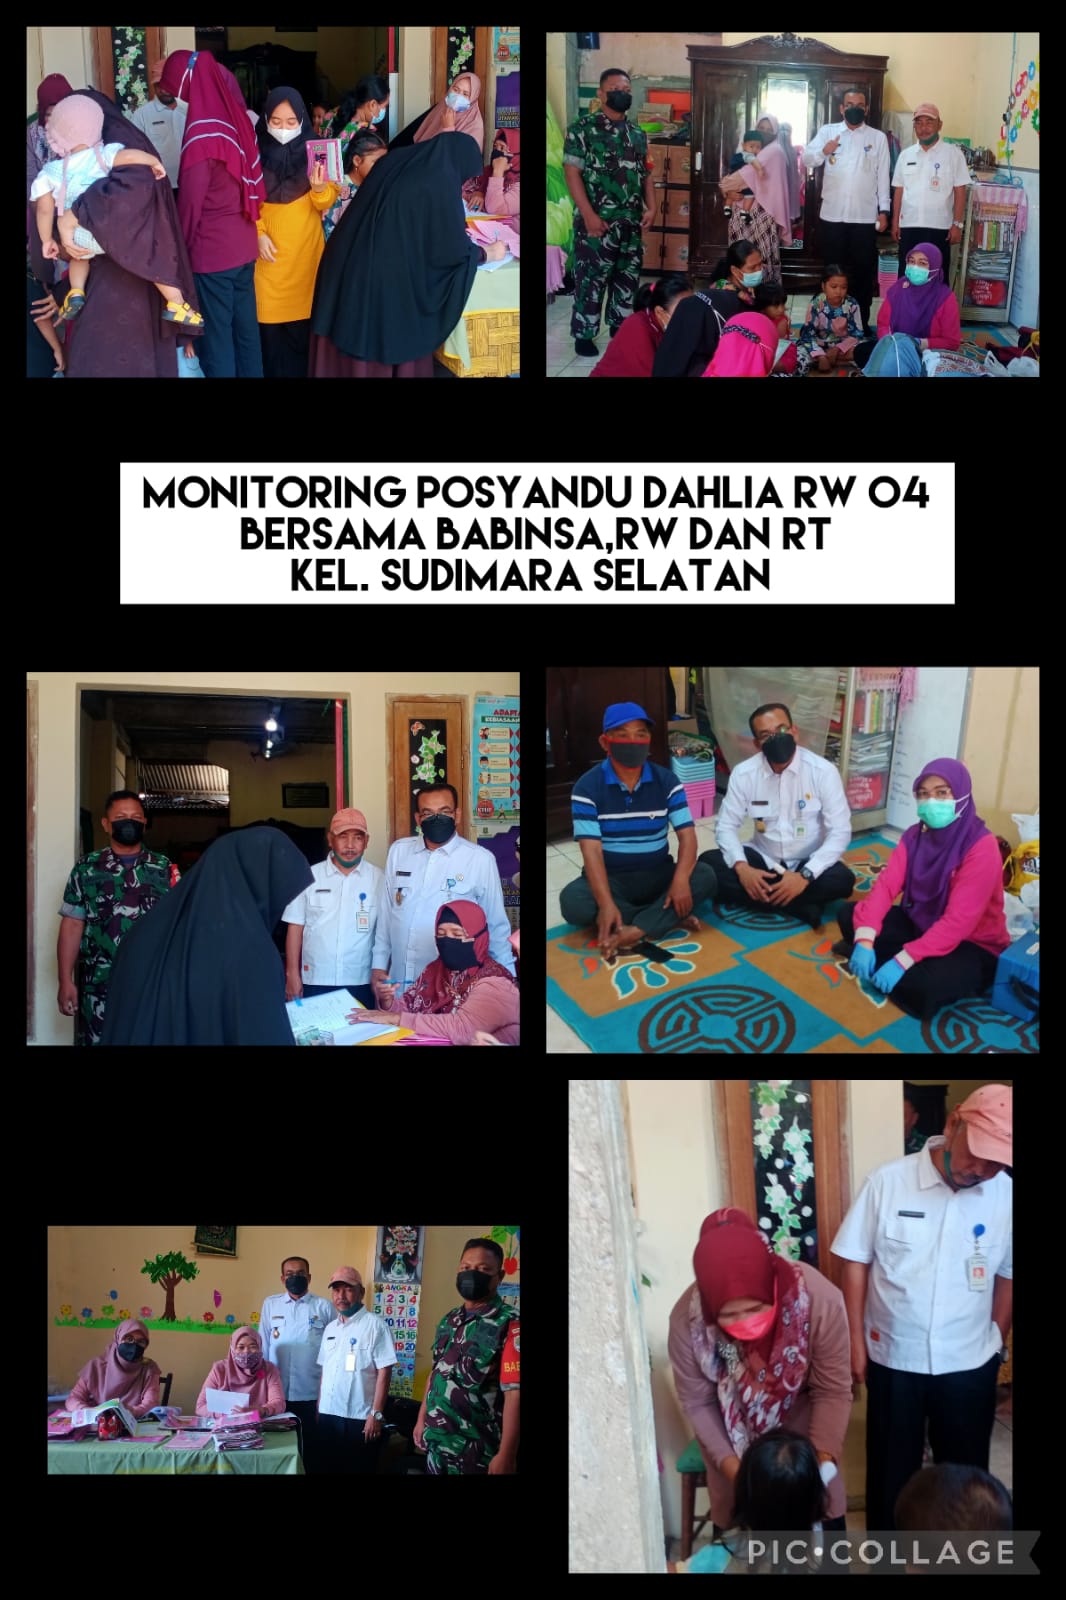 Monitoring Kegiatan Posyandu dan Posbindu di Posyandu Dahlia RW 01 Kel. Sudimara Selatan